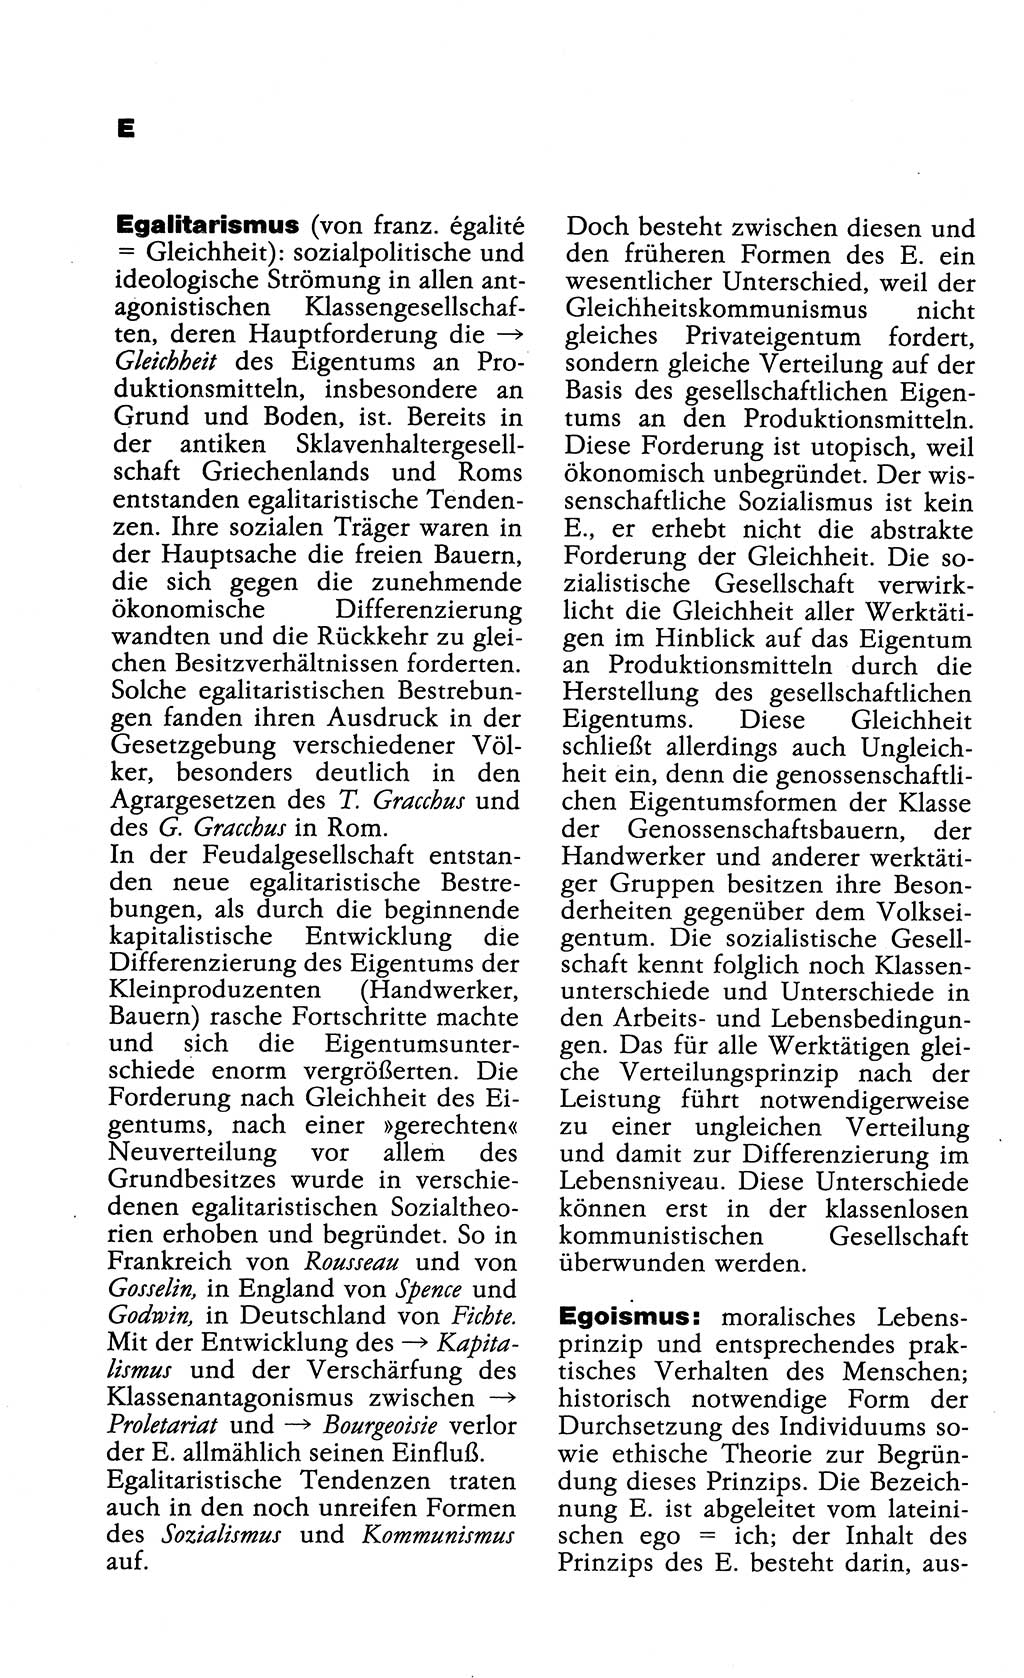 Wörterbuch der marxistisch-leninistischen Philosophie [Deutsche Demokratische Republik (DDR)] 1985, Seite 132 (Wb. ML Phil. DDR 1985, S. 132)